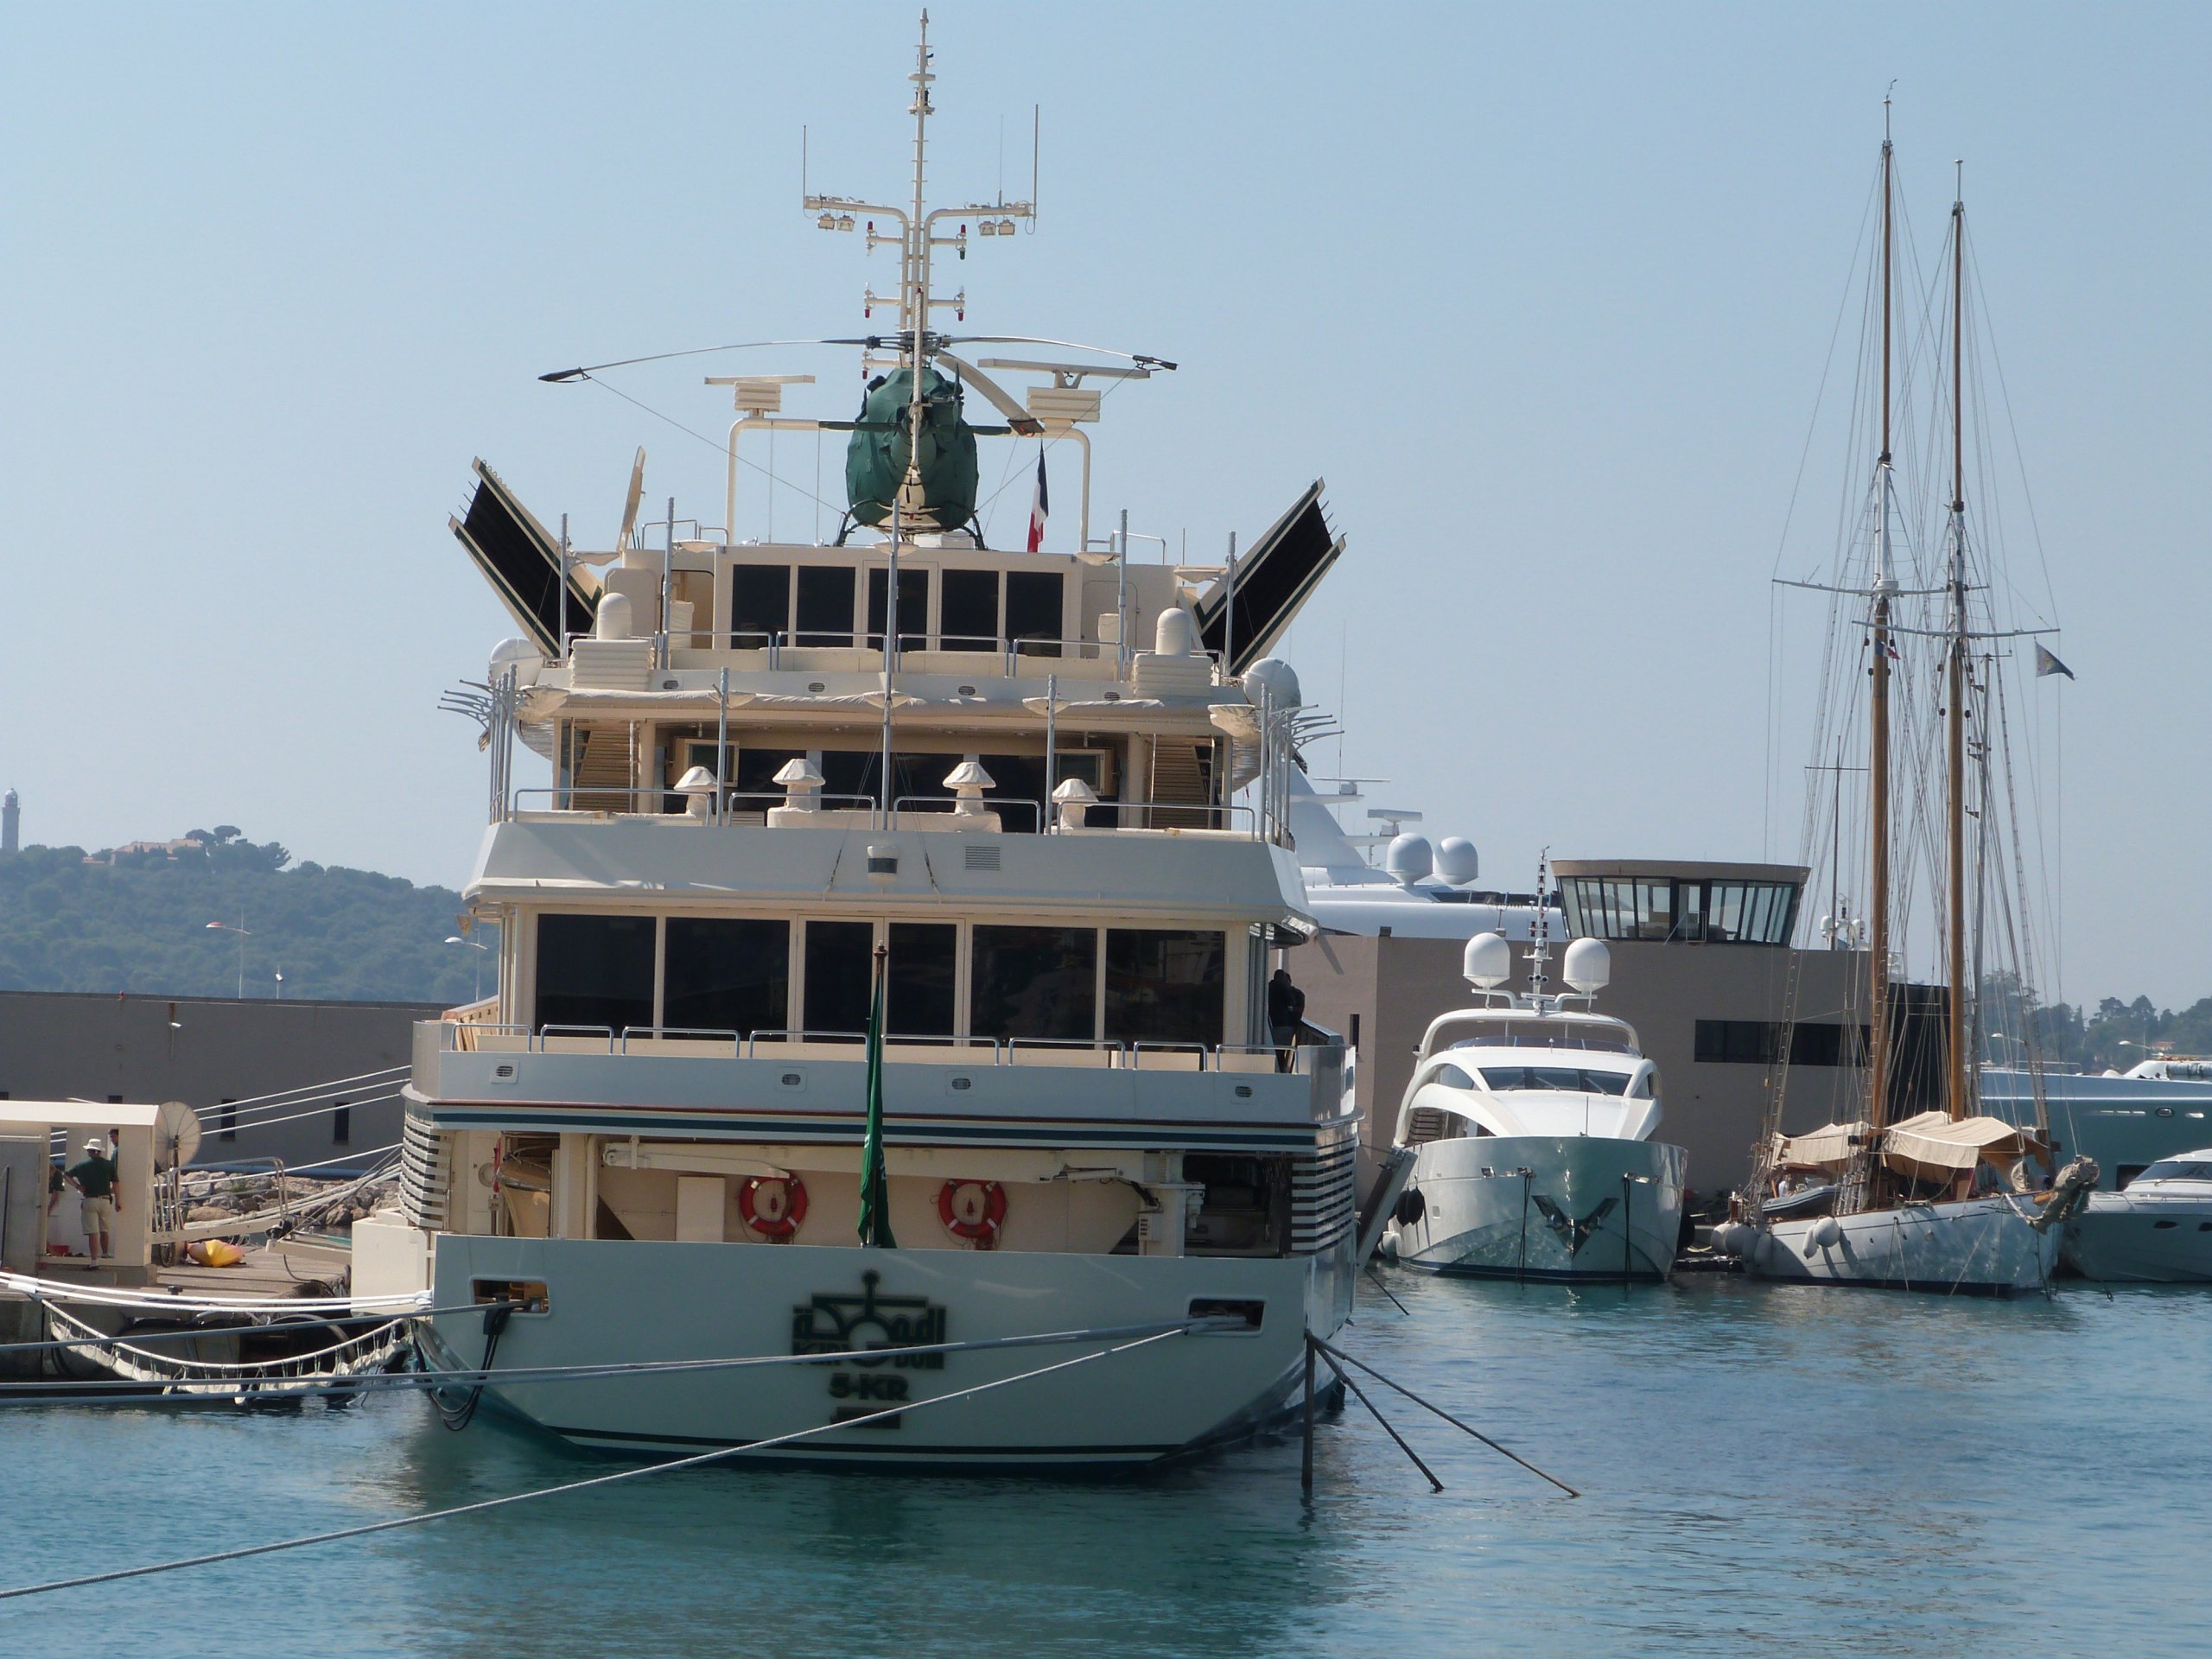 яхта Kingdom 5KR - Benetti - 1980 г. - принц Аль-Валид бин Талал